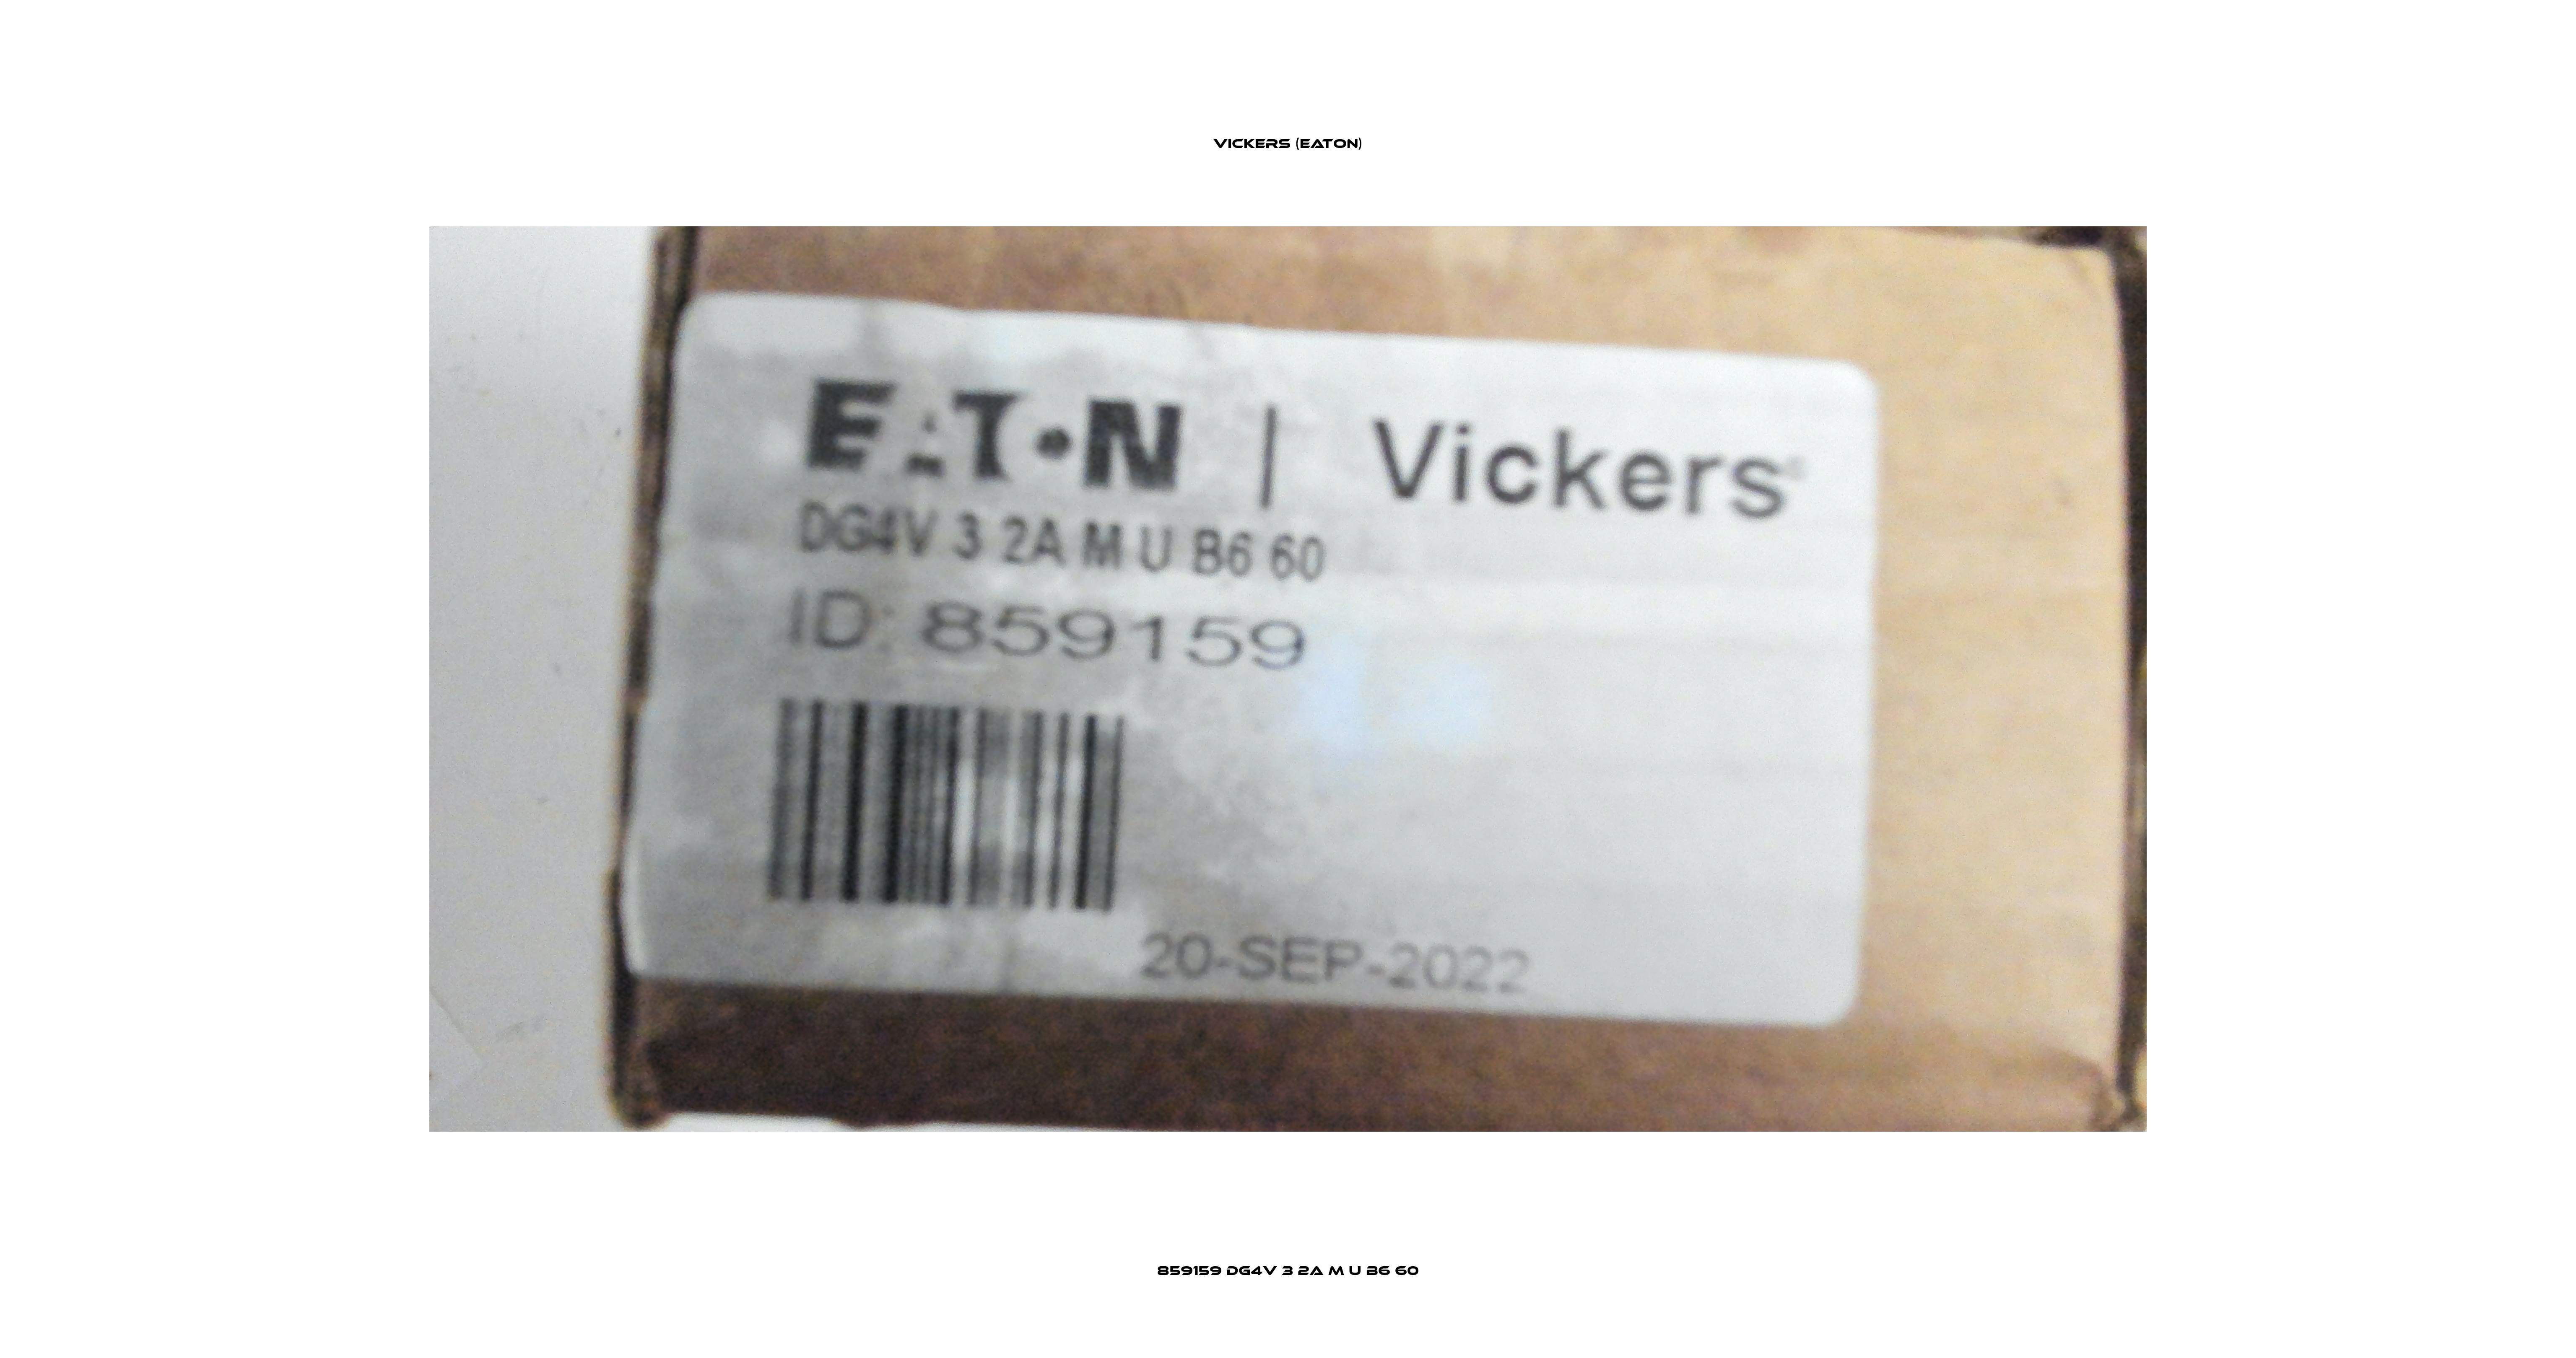 859159 DG4V 3 2A M U B6 60 Vickers (Eaton)